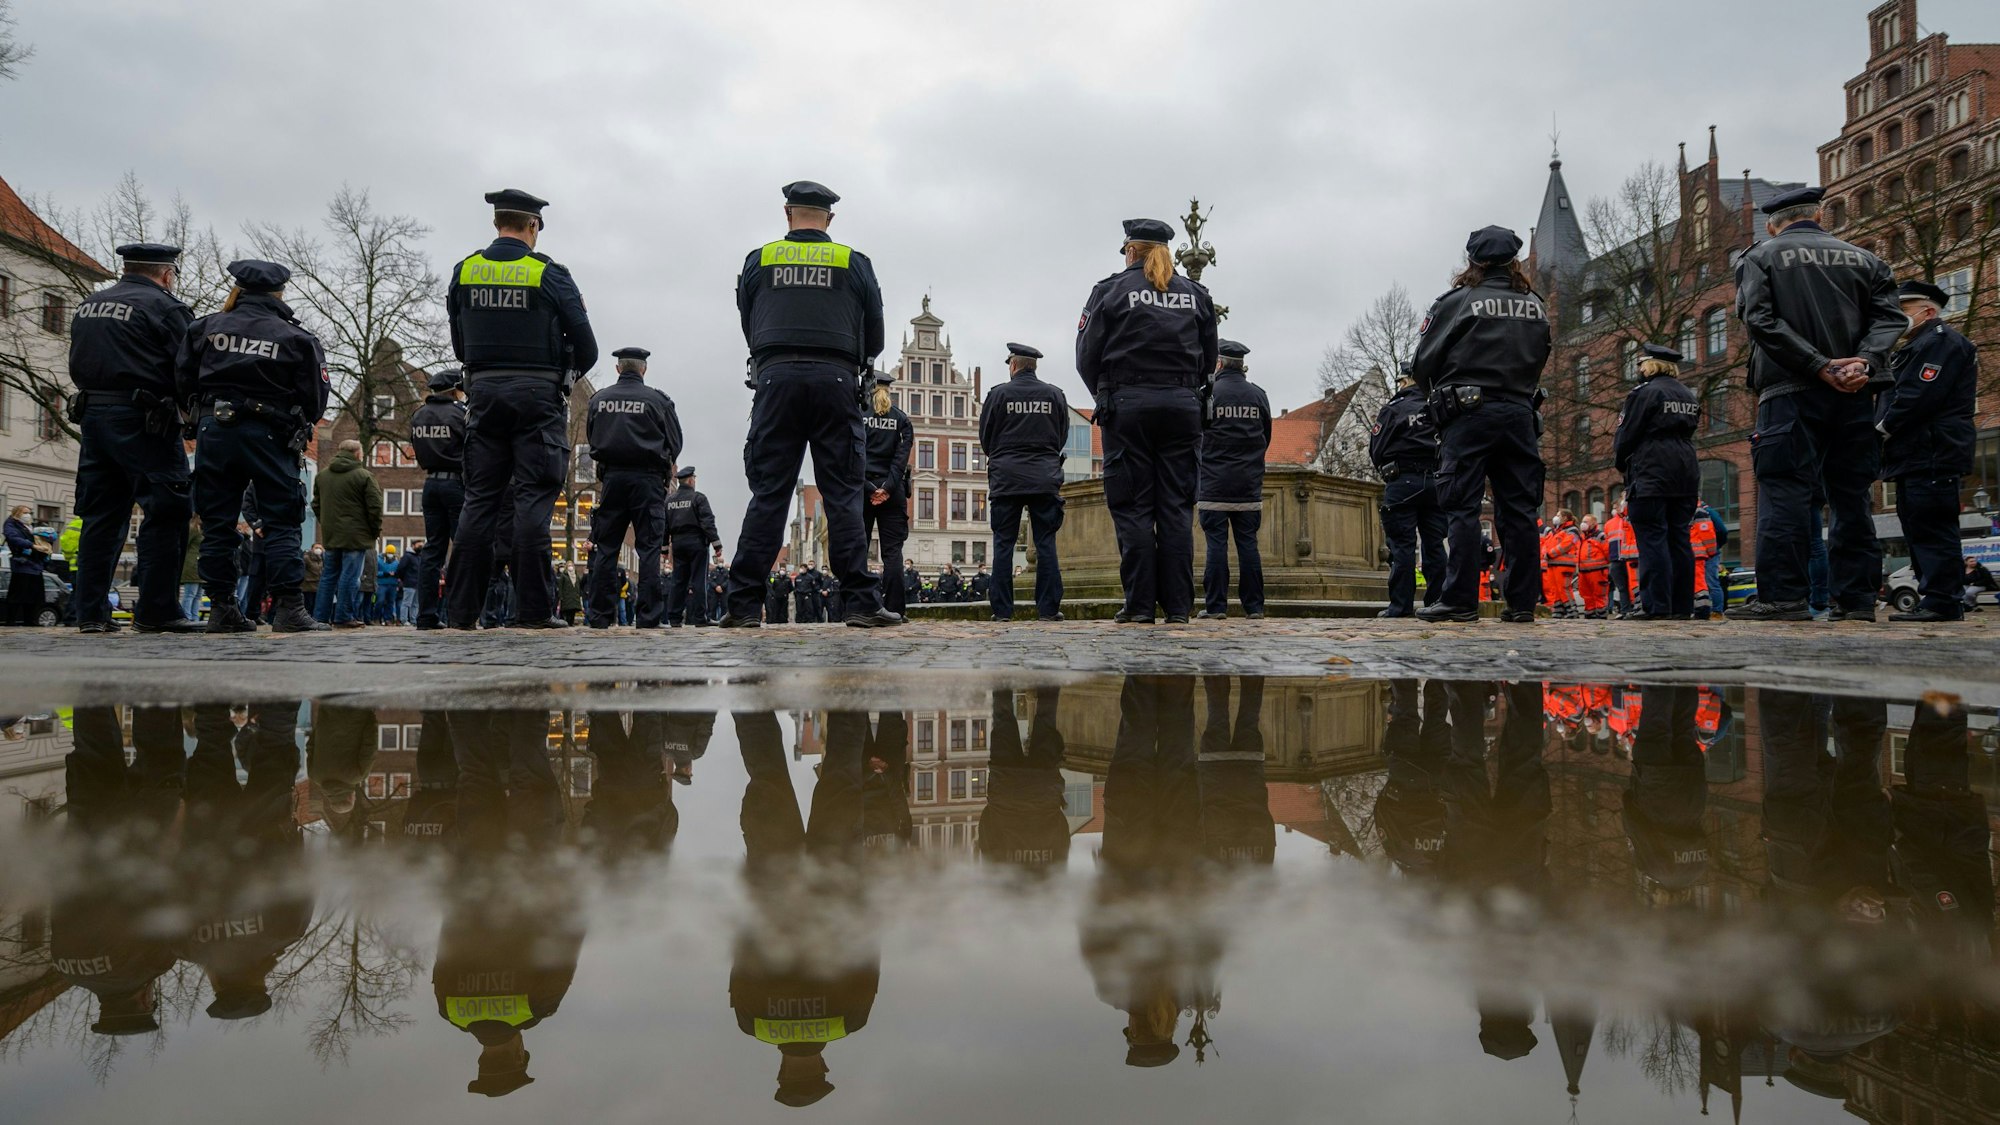 Polizisten stehen auf dem Marktplatz zusammen, um eine Schweigeminute für die in Rheinland-Pfalz getöteten Polizisten abzuhalten.